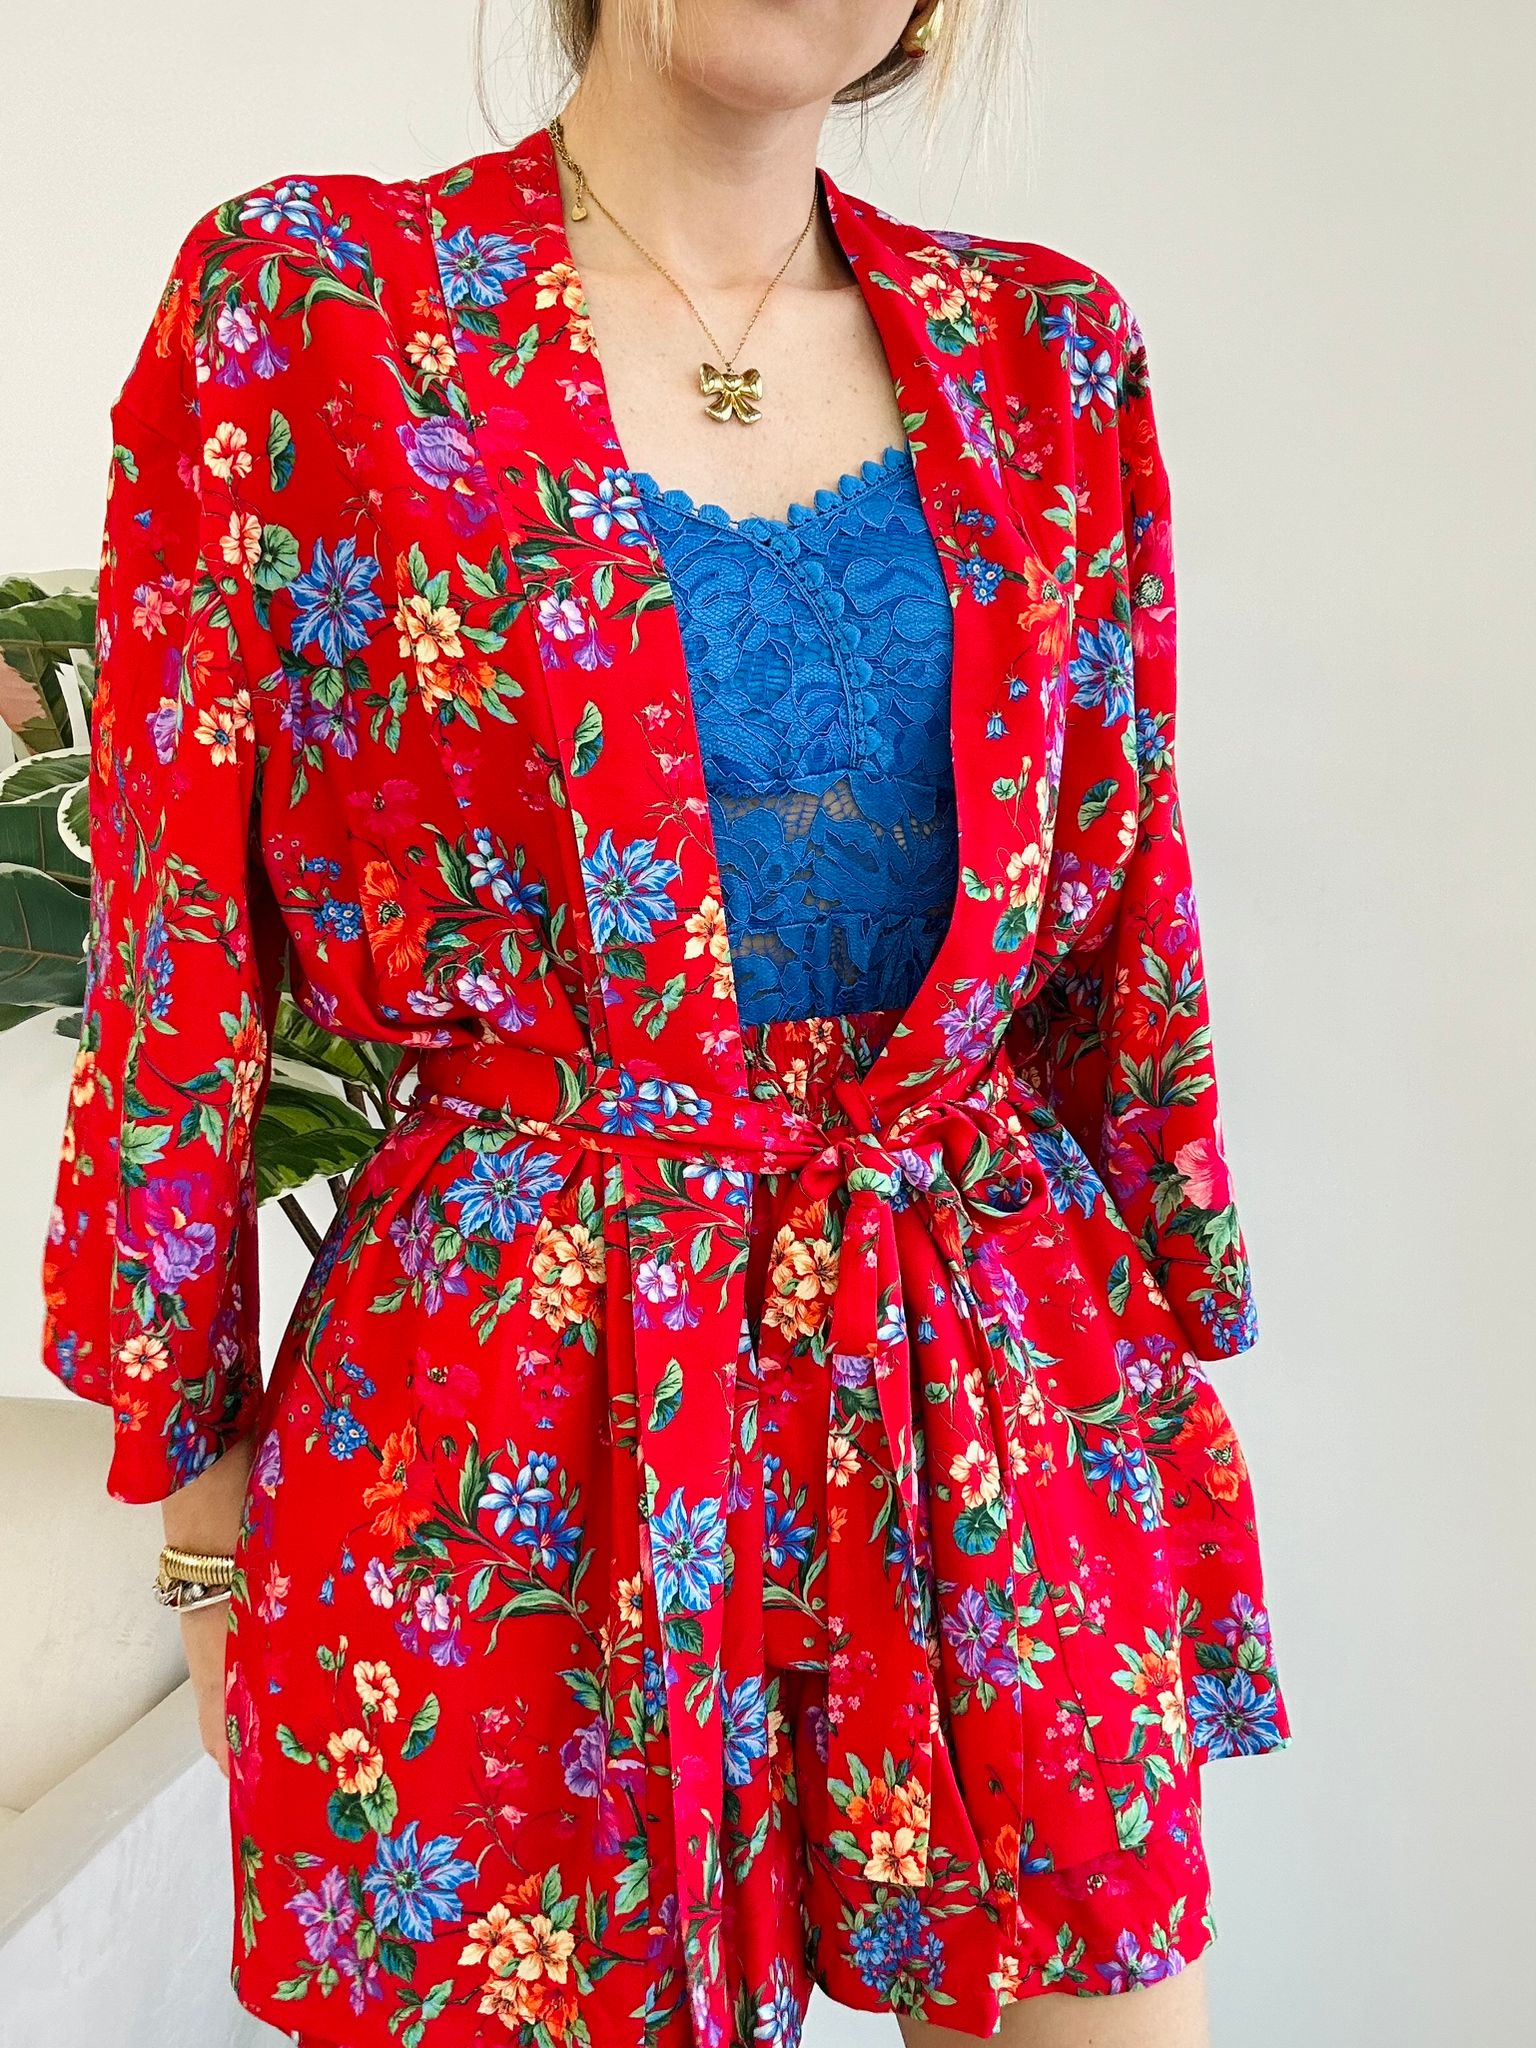 Coordinato Nerano (Camicia Kimono + Pantaloncino) Fondo Rosso